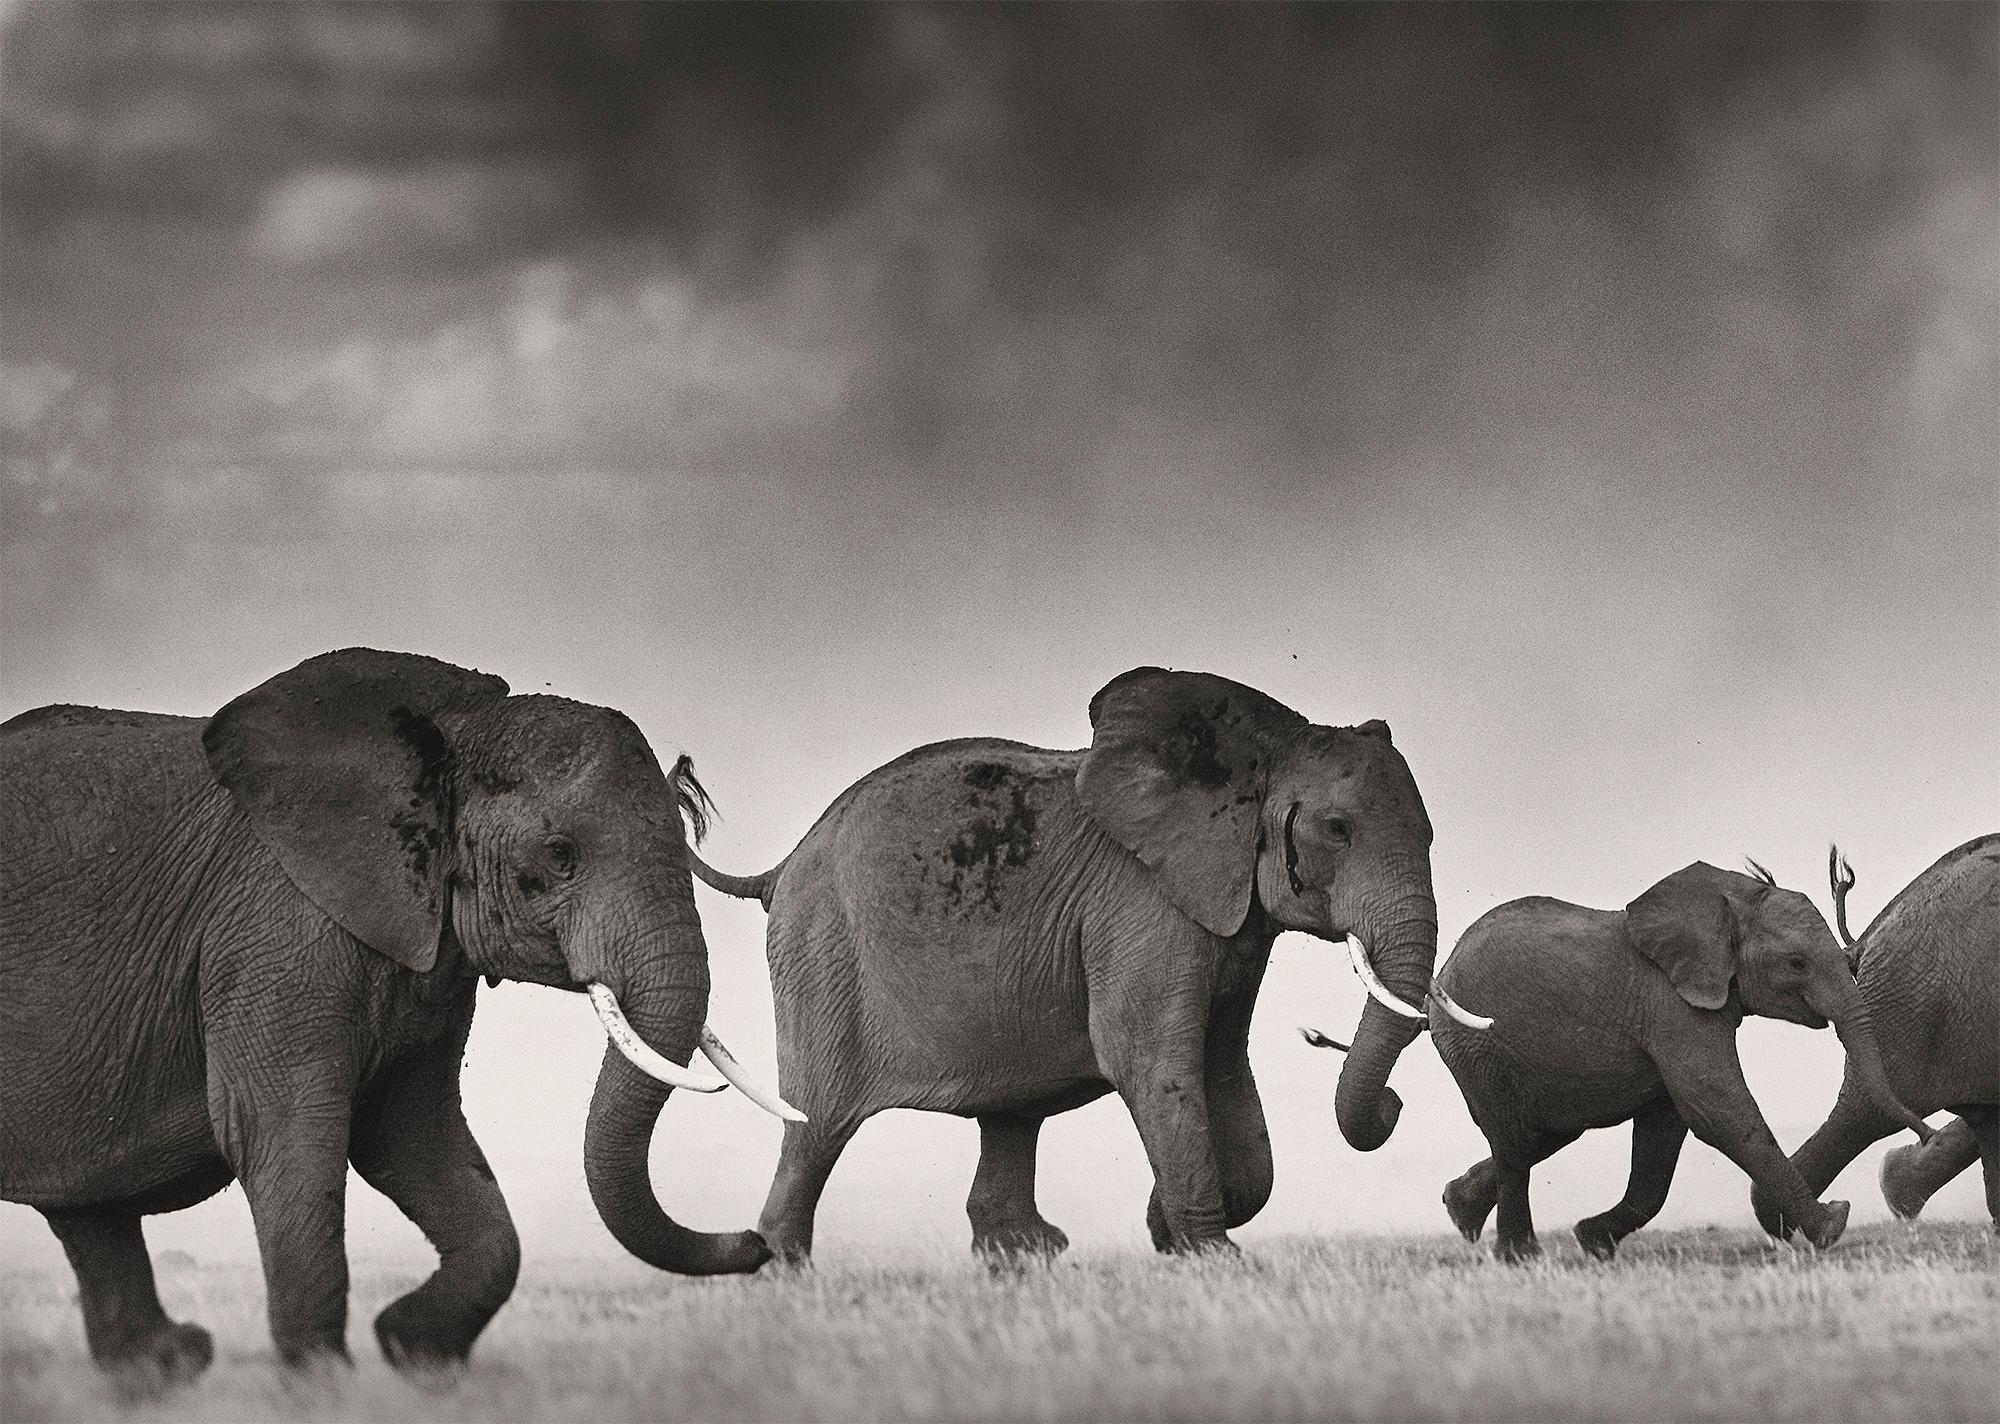 Auflage von 3
Signiert, betitelt und nummeriert 
Gesamtgröße 228 x 112 cm / 89.8 x 44.1 inch (ungerahmt)
Größe pro Blatt 56 x 76 cm / 22 x 30 inch

Eine Elefantenherde flieht vor einem schweren Gewitter im Amboseli-Nationalpark.

Im Jahr 2012 wurde